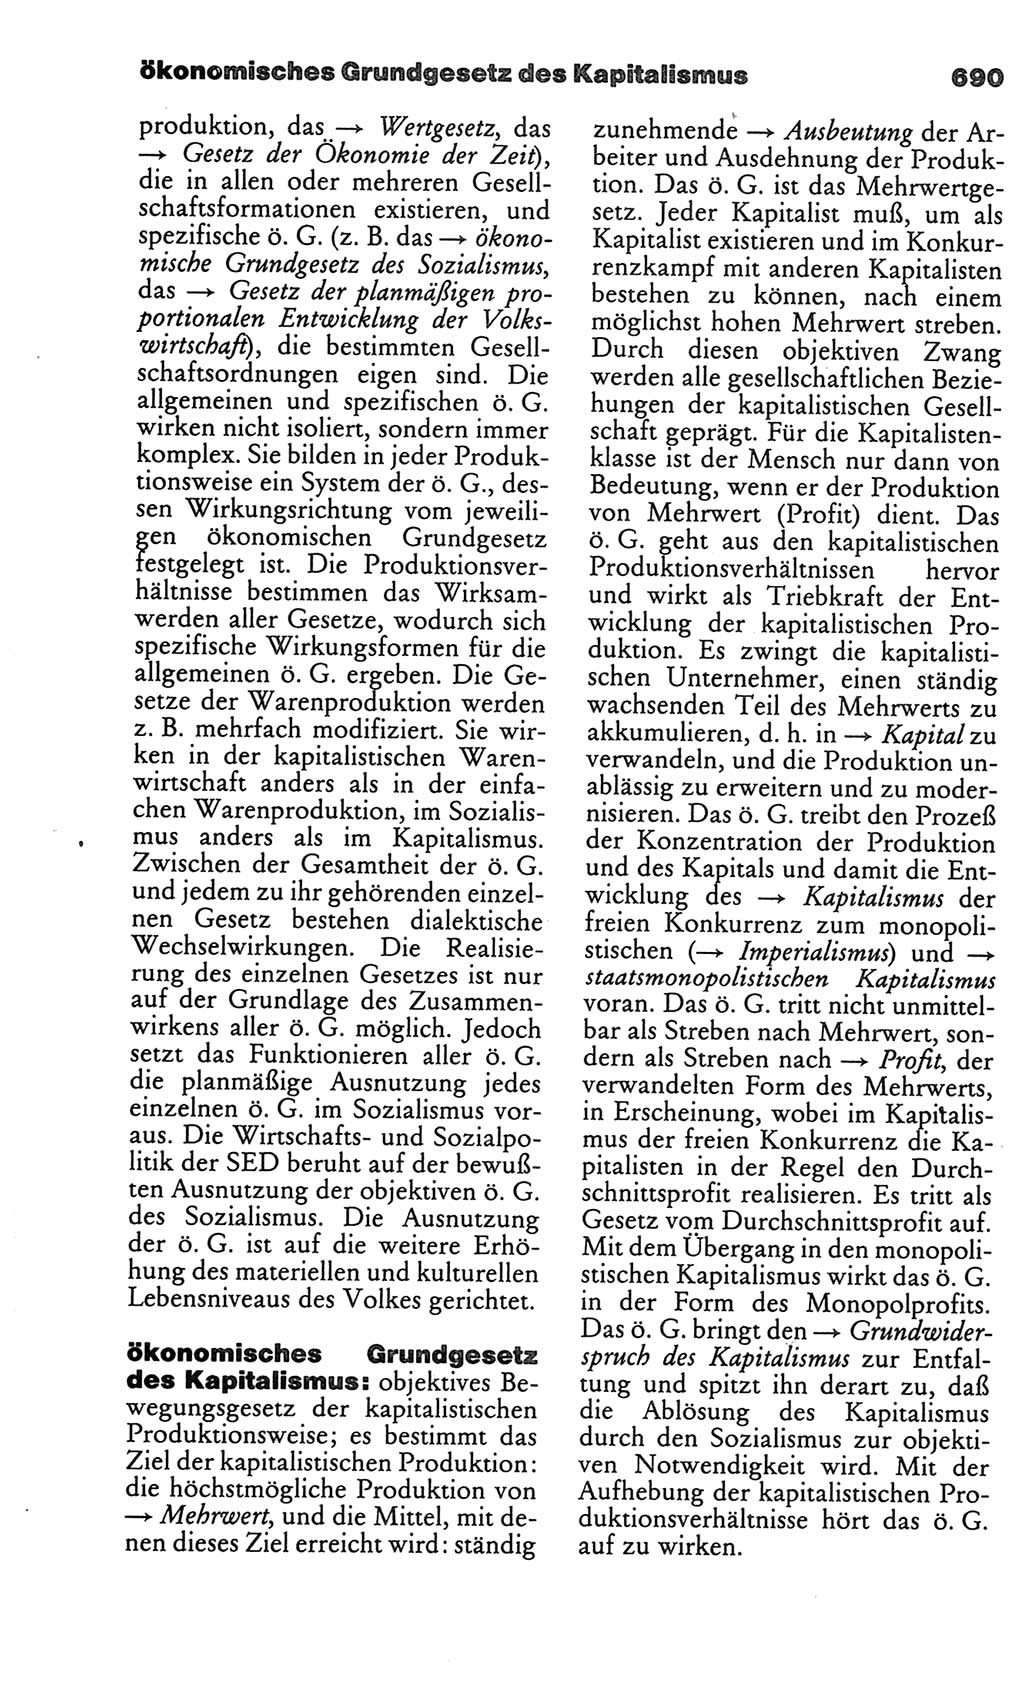 Kleines politisches Wörterbuch [Deutsche Demokratische Republik (DDR)] 1986, Seite 690 (Kl. pol. Wb. DDR 1986, S. 690)